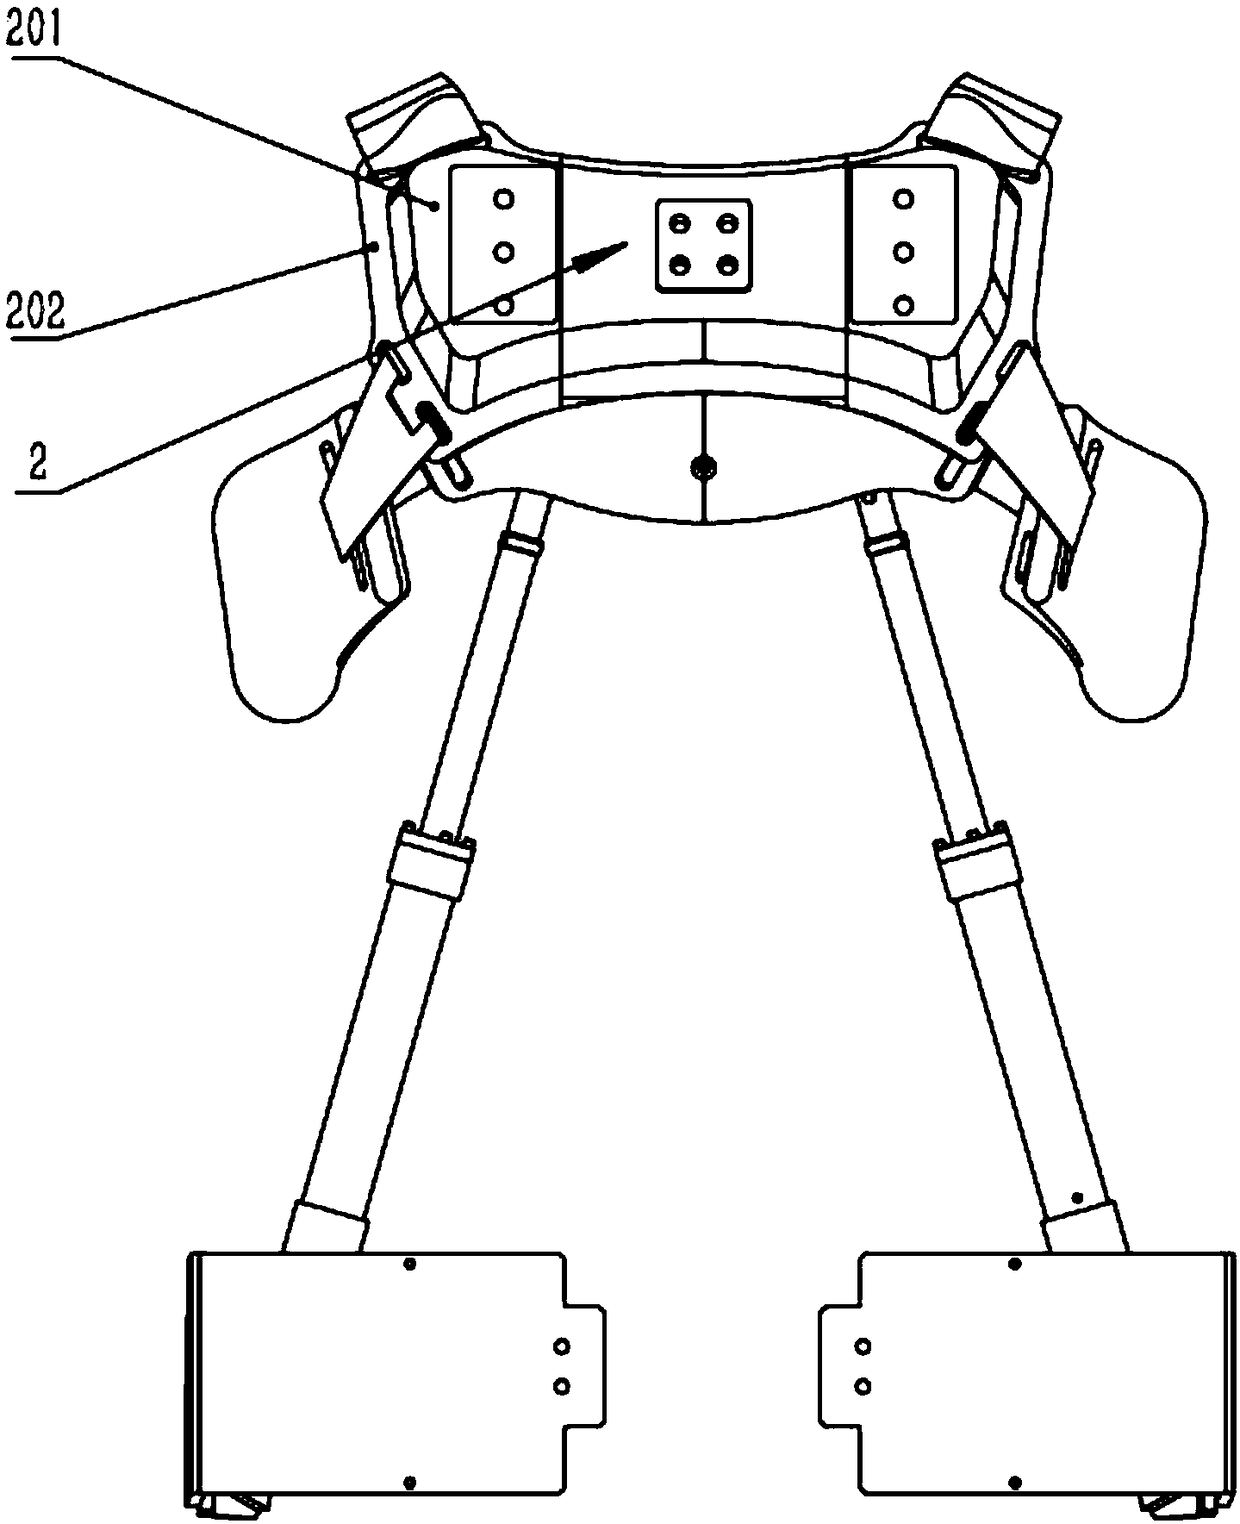 Upper body chest power-assist mechanism for power-assist exoskeleton robot